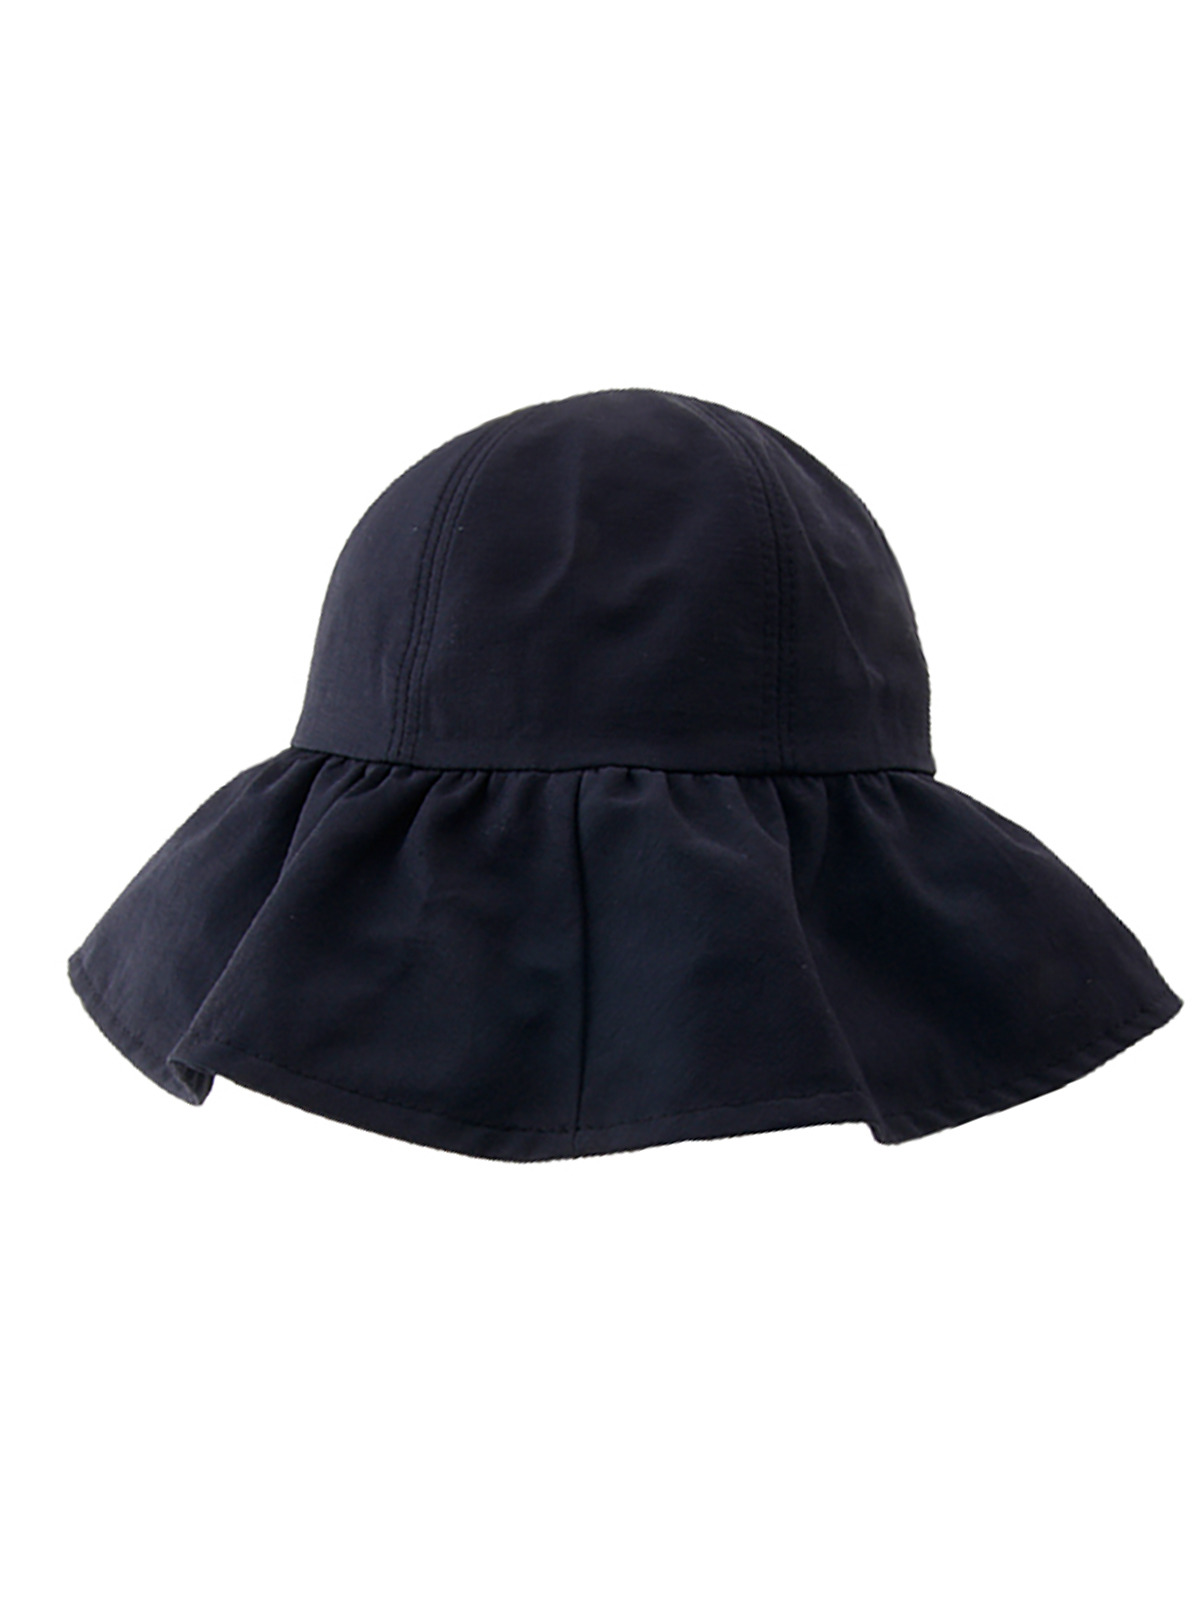 여성 벙거지 모자 플로피햇 쳉넓은 모자 썬캡 LCLH026